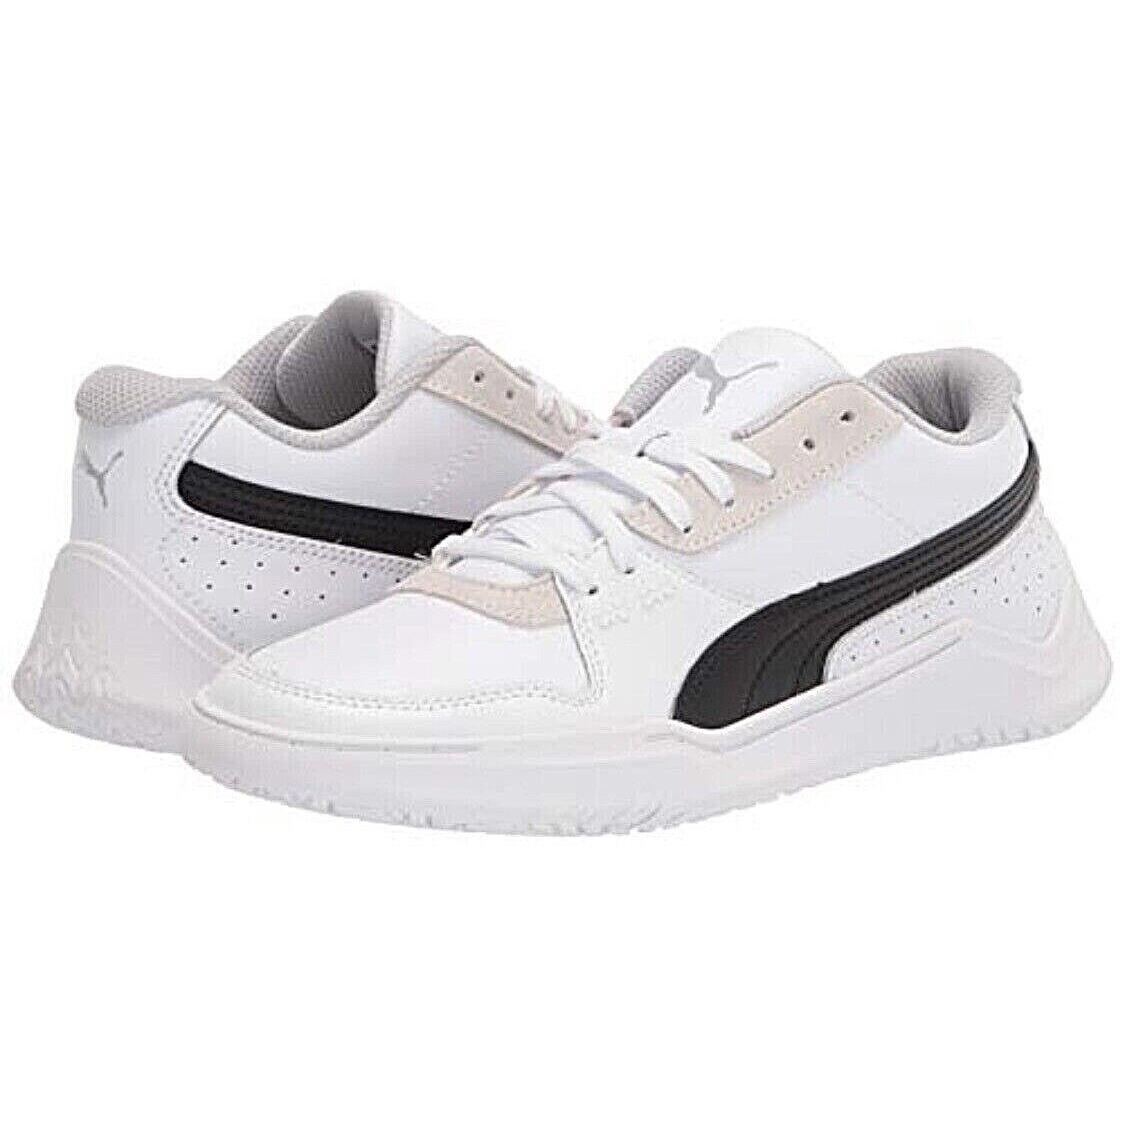 Men`s Puma DC Past White-black Athletic Shoes 373021-02 Size 12